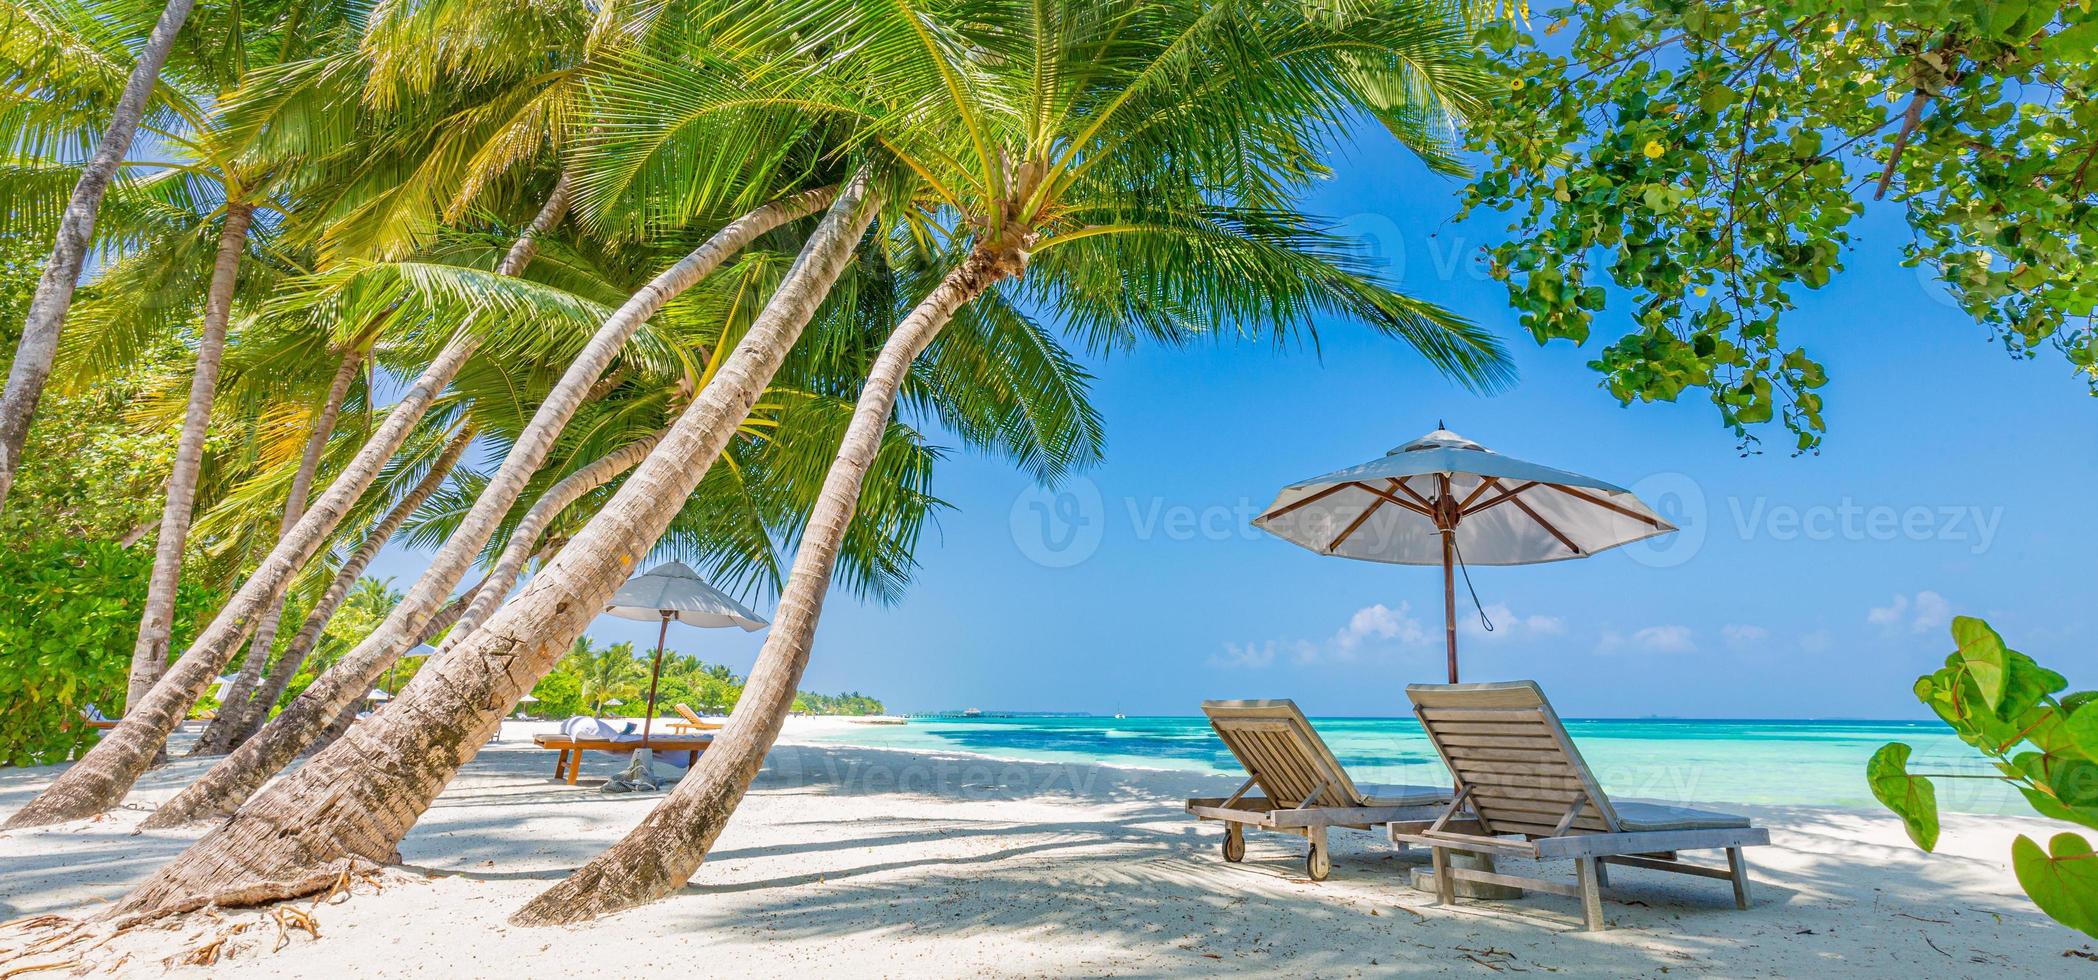 tropisk strandnatur som sommarlandskap med solstolar och palmer och lugnt hav för strandbanner. lyxigt reselandskap, vacker destination för semester eller semester. havet foto